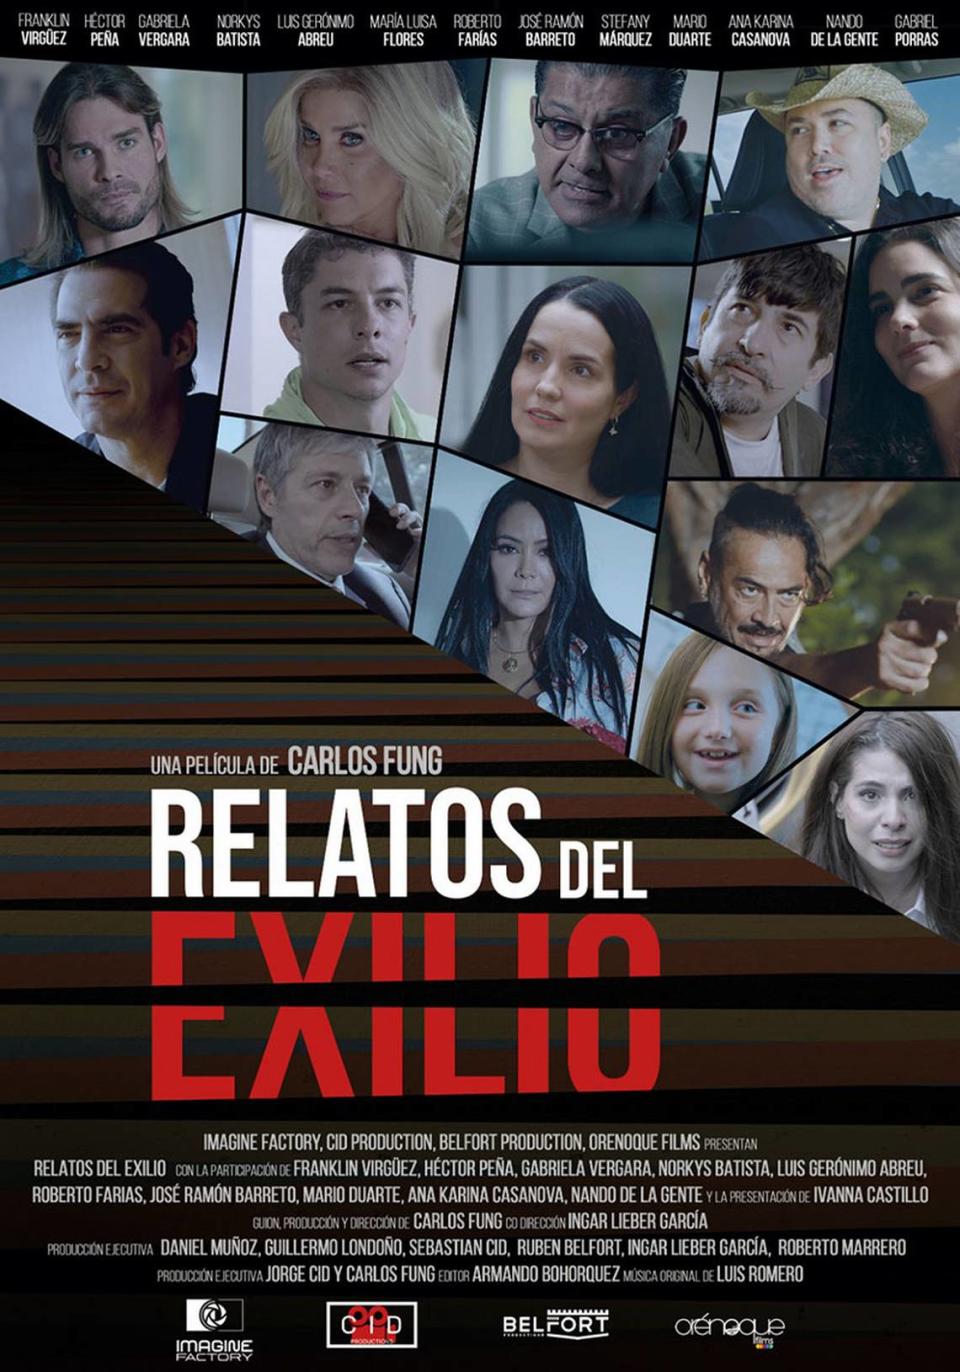 “Relatos del Exilio” flyer